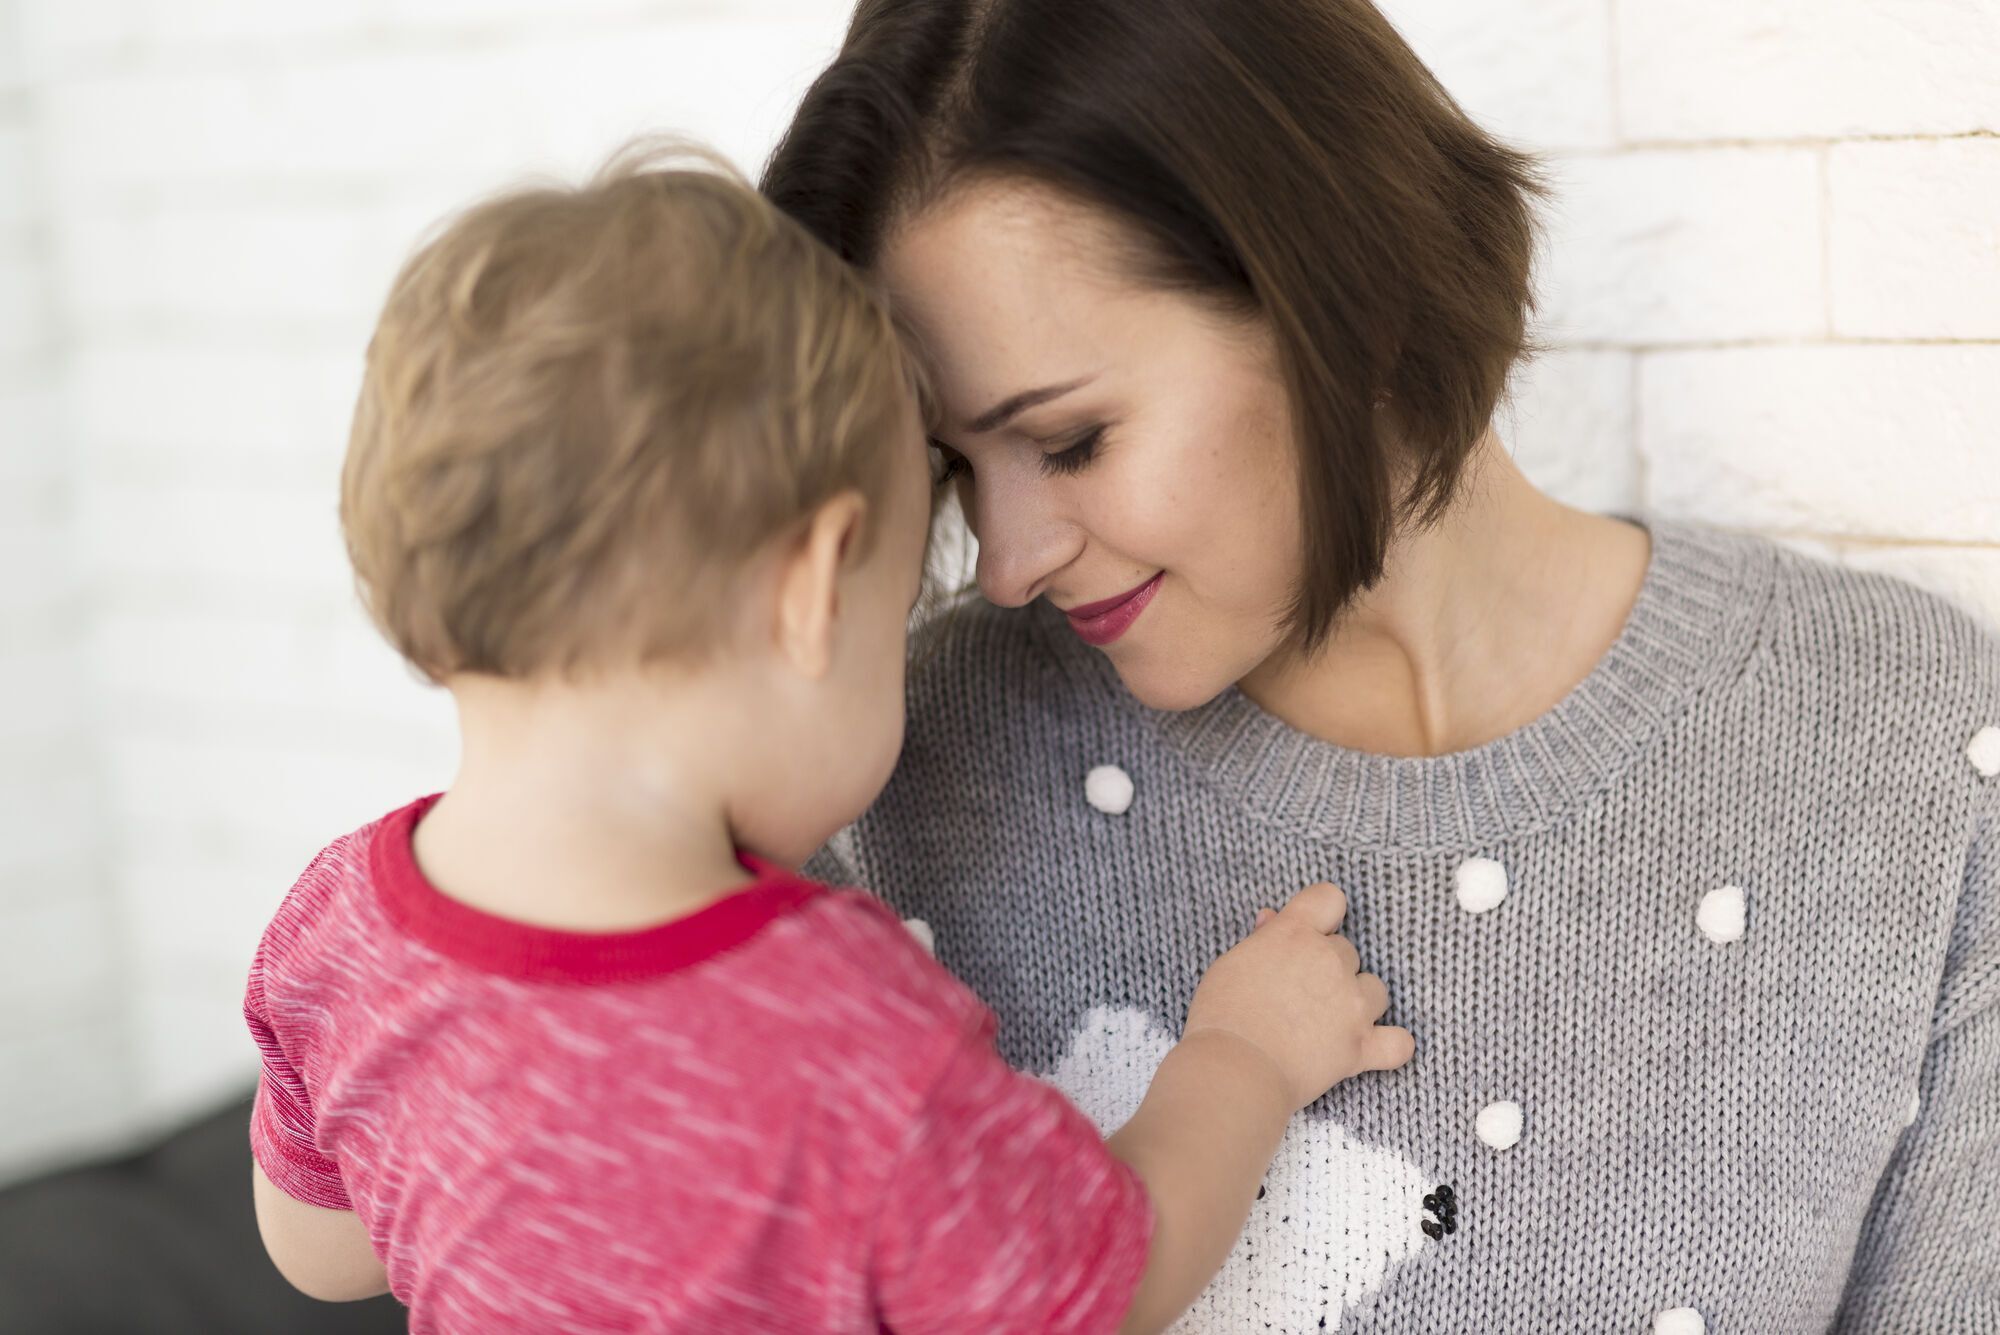 Не сравнивайте с другими. 9 ошибок, которых мамы должны избегать в общении с детьми